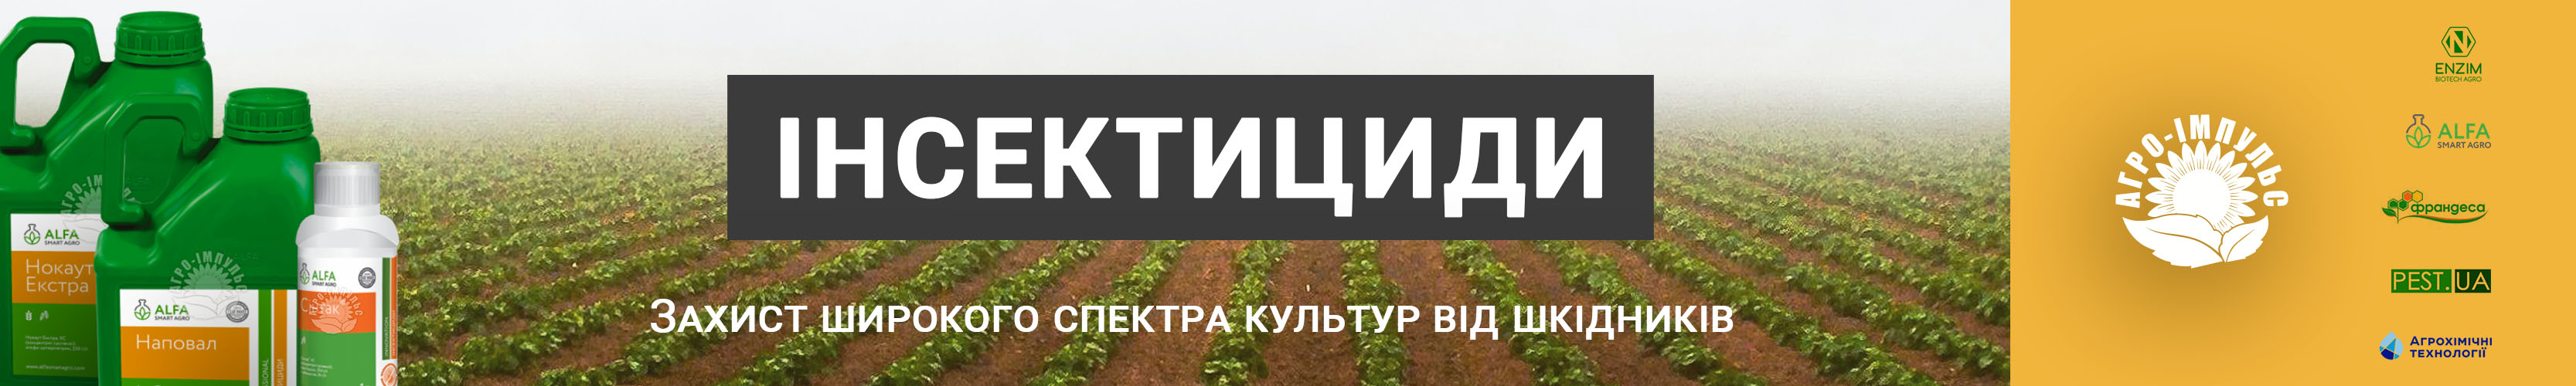 Купити Інсектициди в Україні - банер